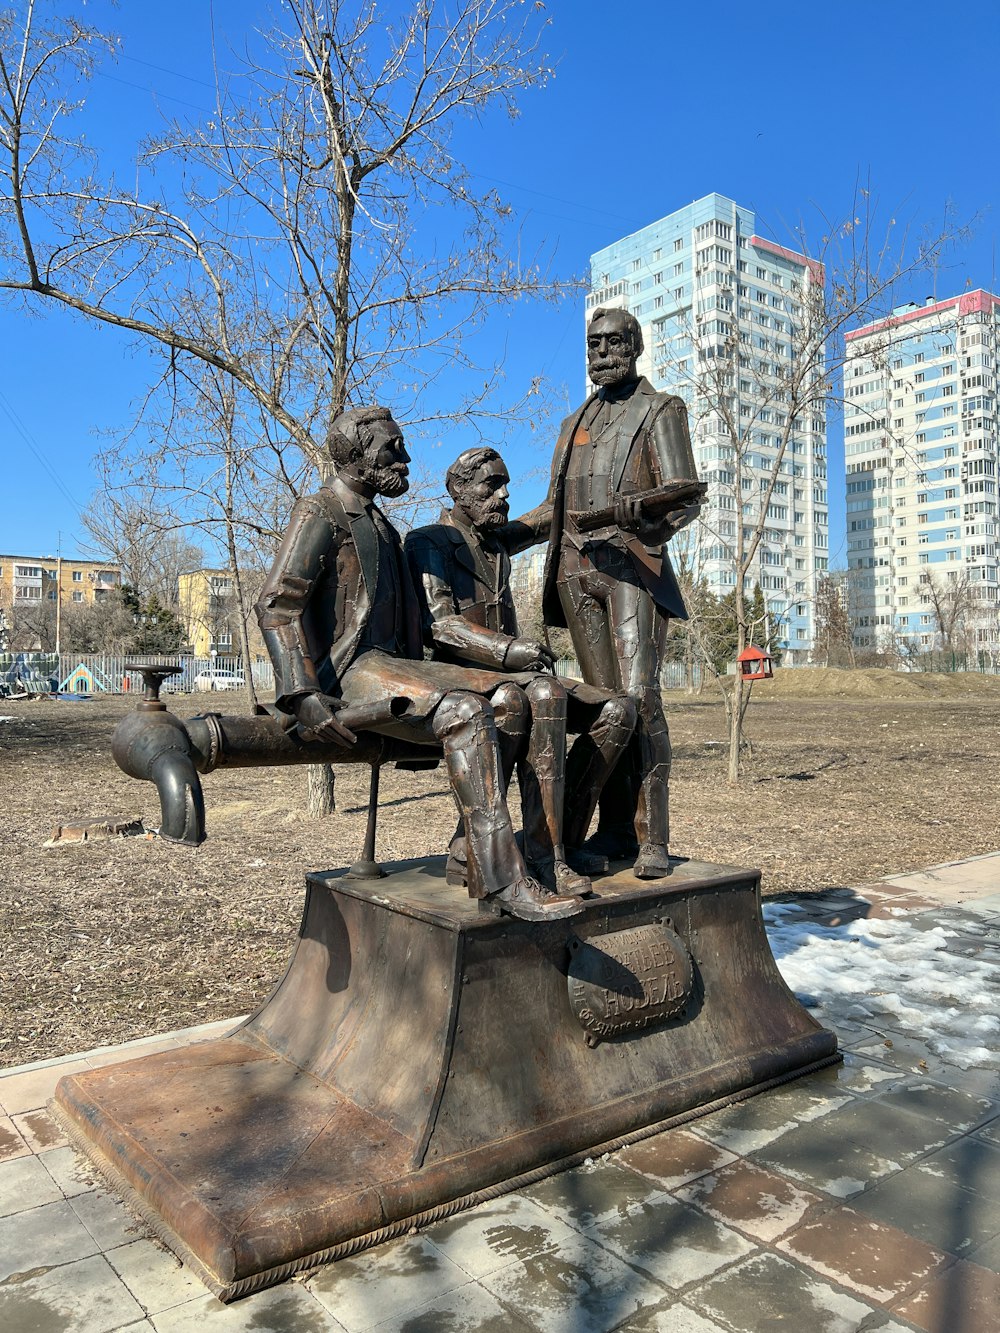 Una estatua de tres personas sentadas en un banco